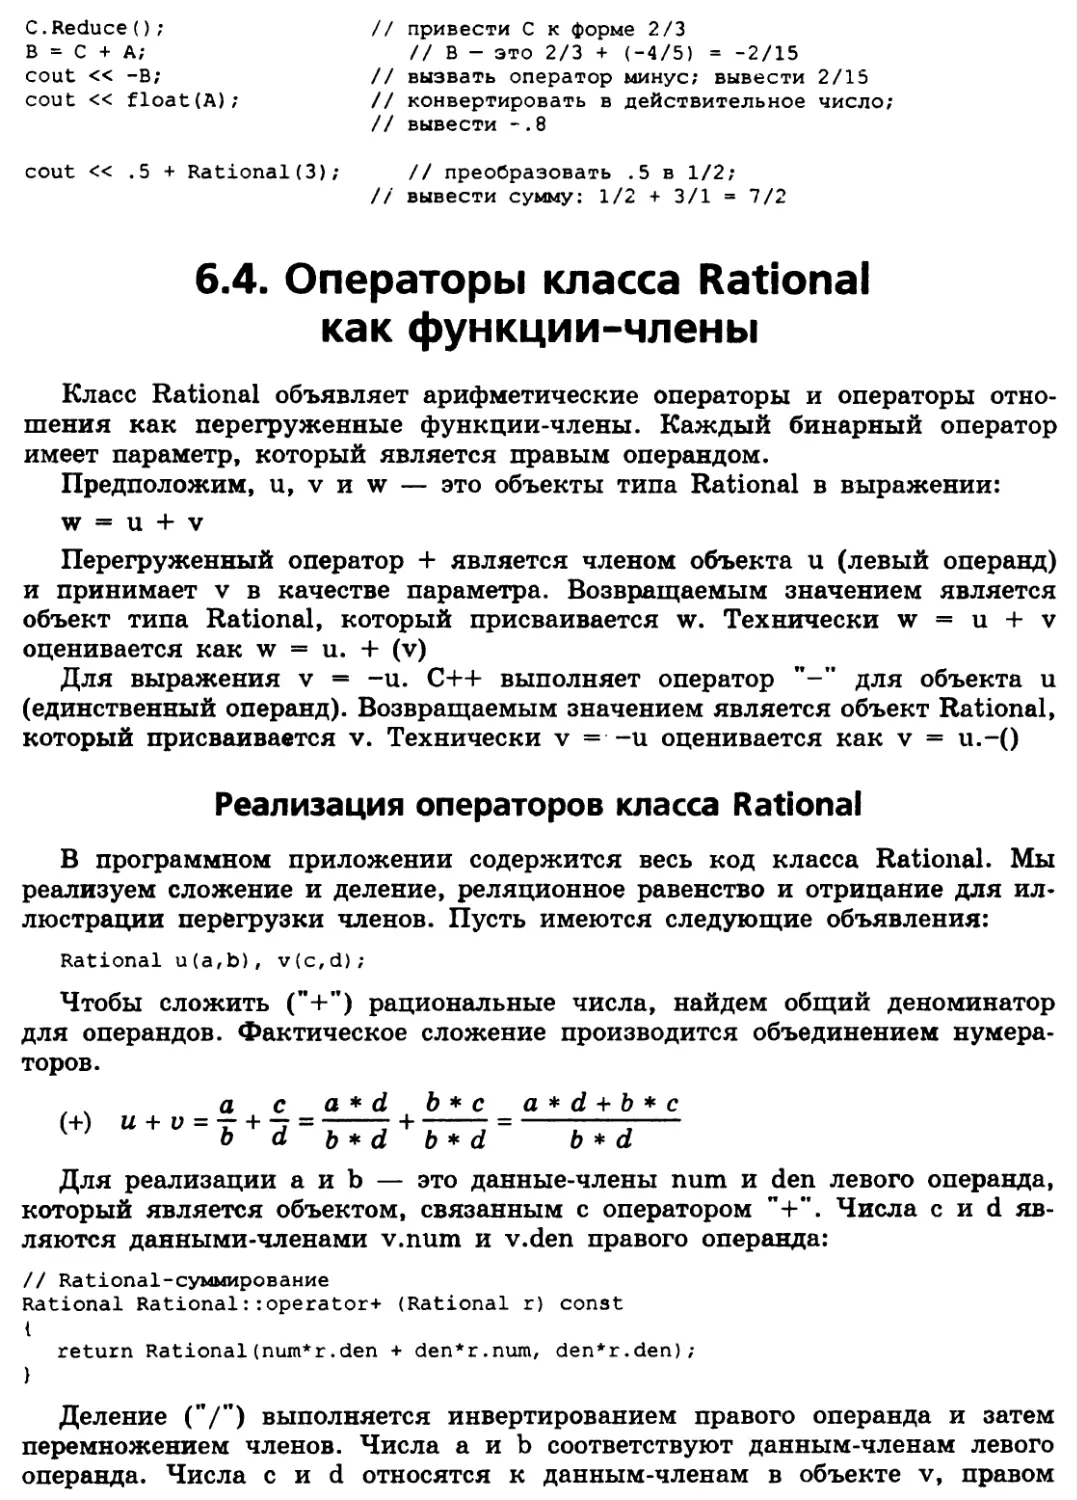 6.4. Операторы класса Rational как функции-члены